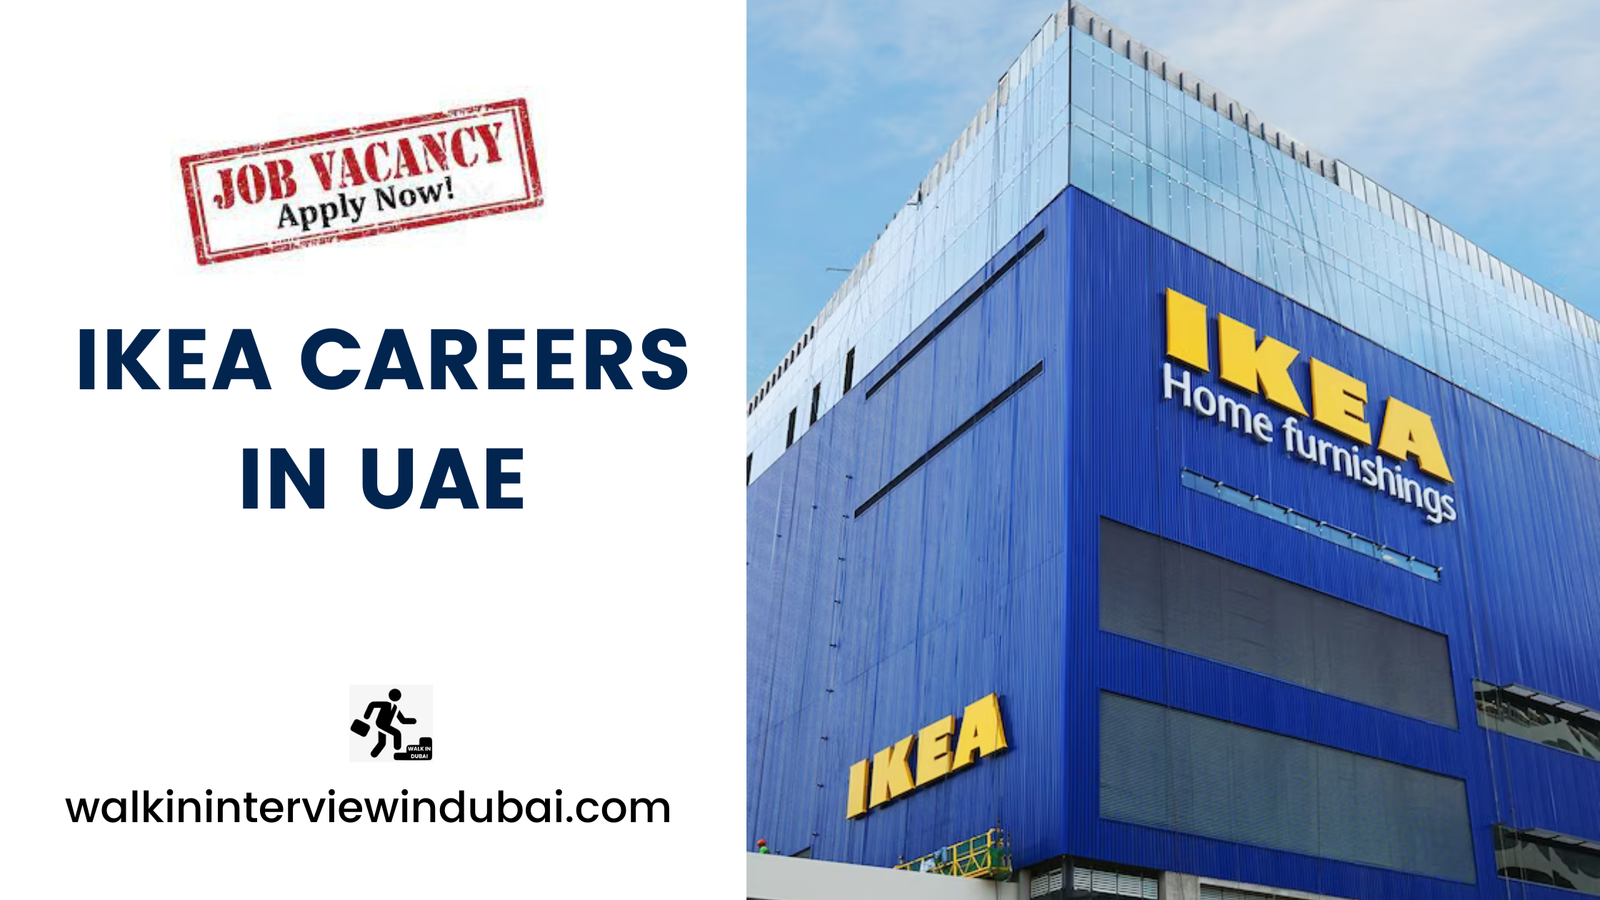 Ikea Careers in UAE